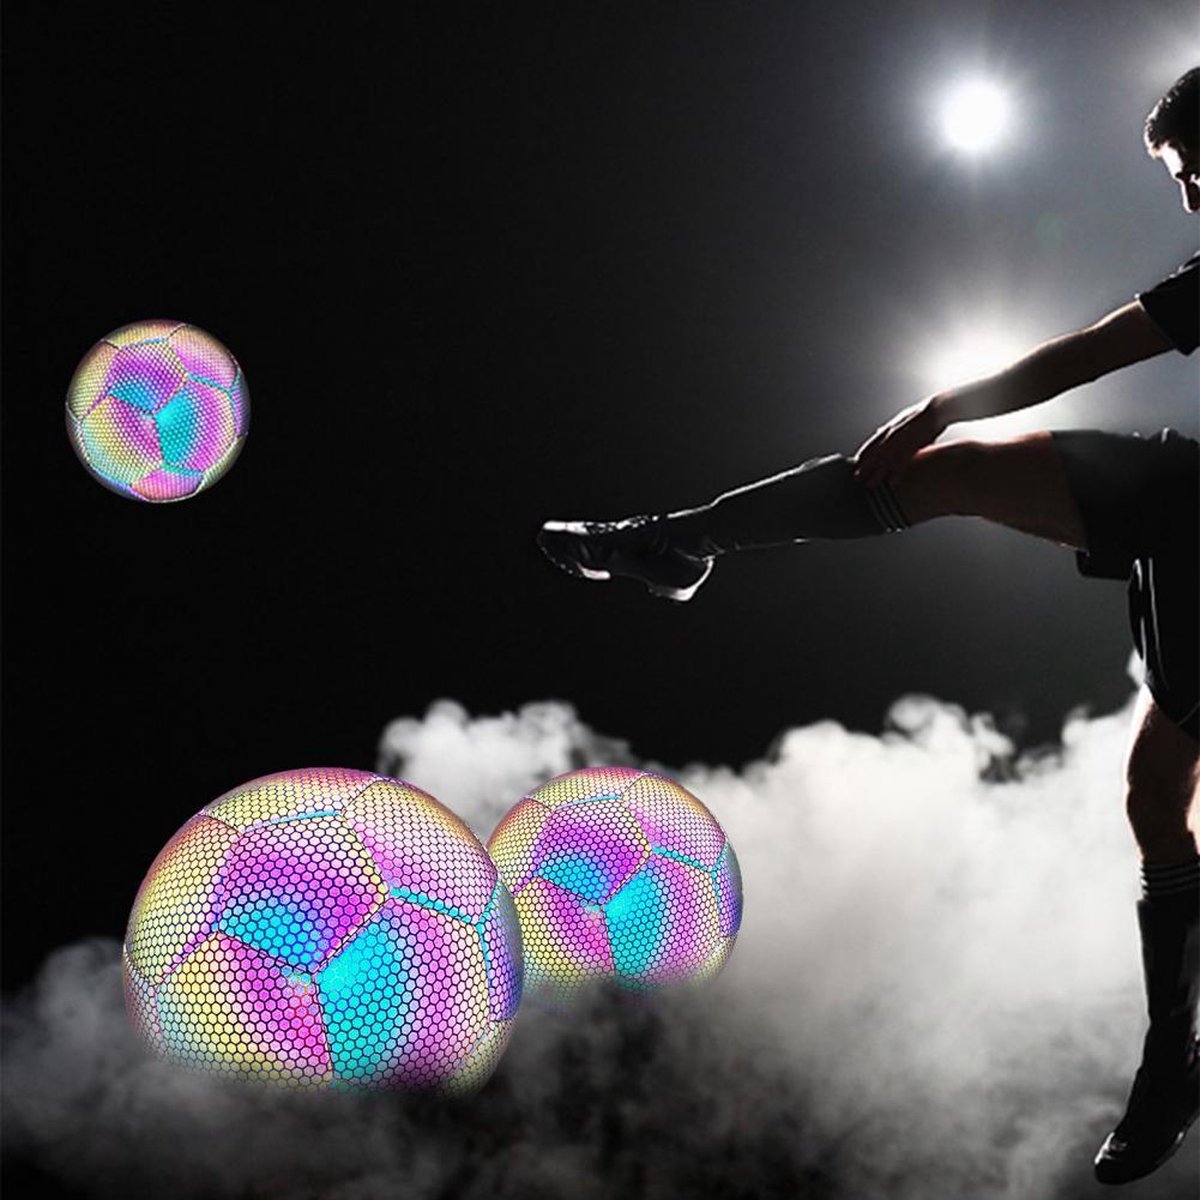 Ariko Ballon de football en cuir lumineux | Réfléchissant | Holographique | Brille dans le noir | Unisexe | Taille 5 | Avec pompe, aiguille et sac de rangement pratique